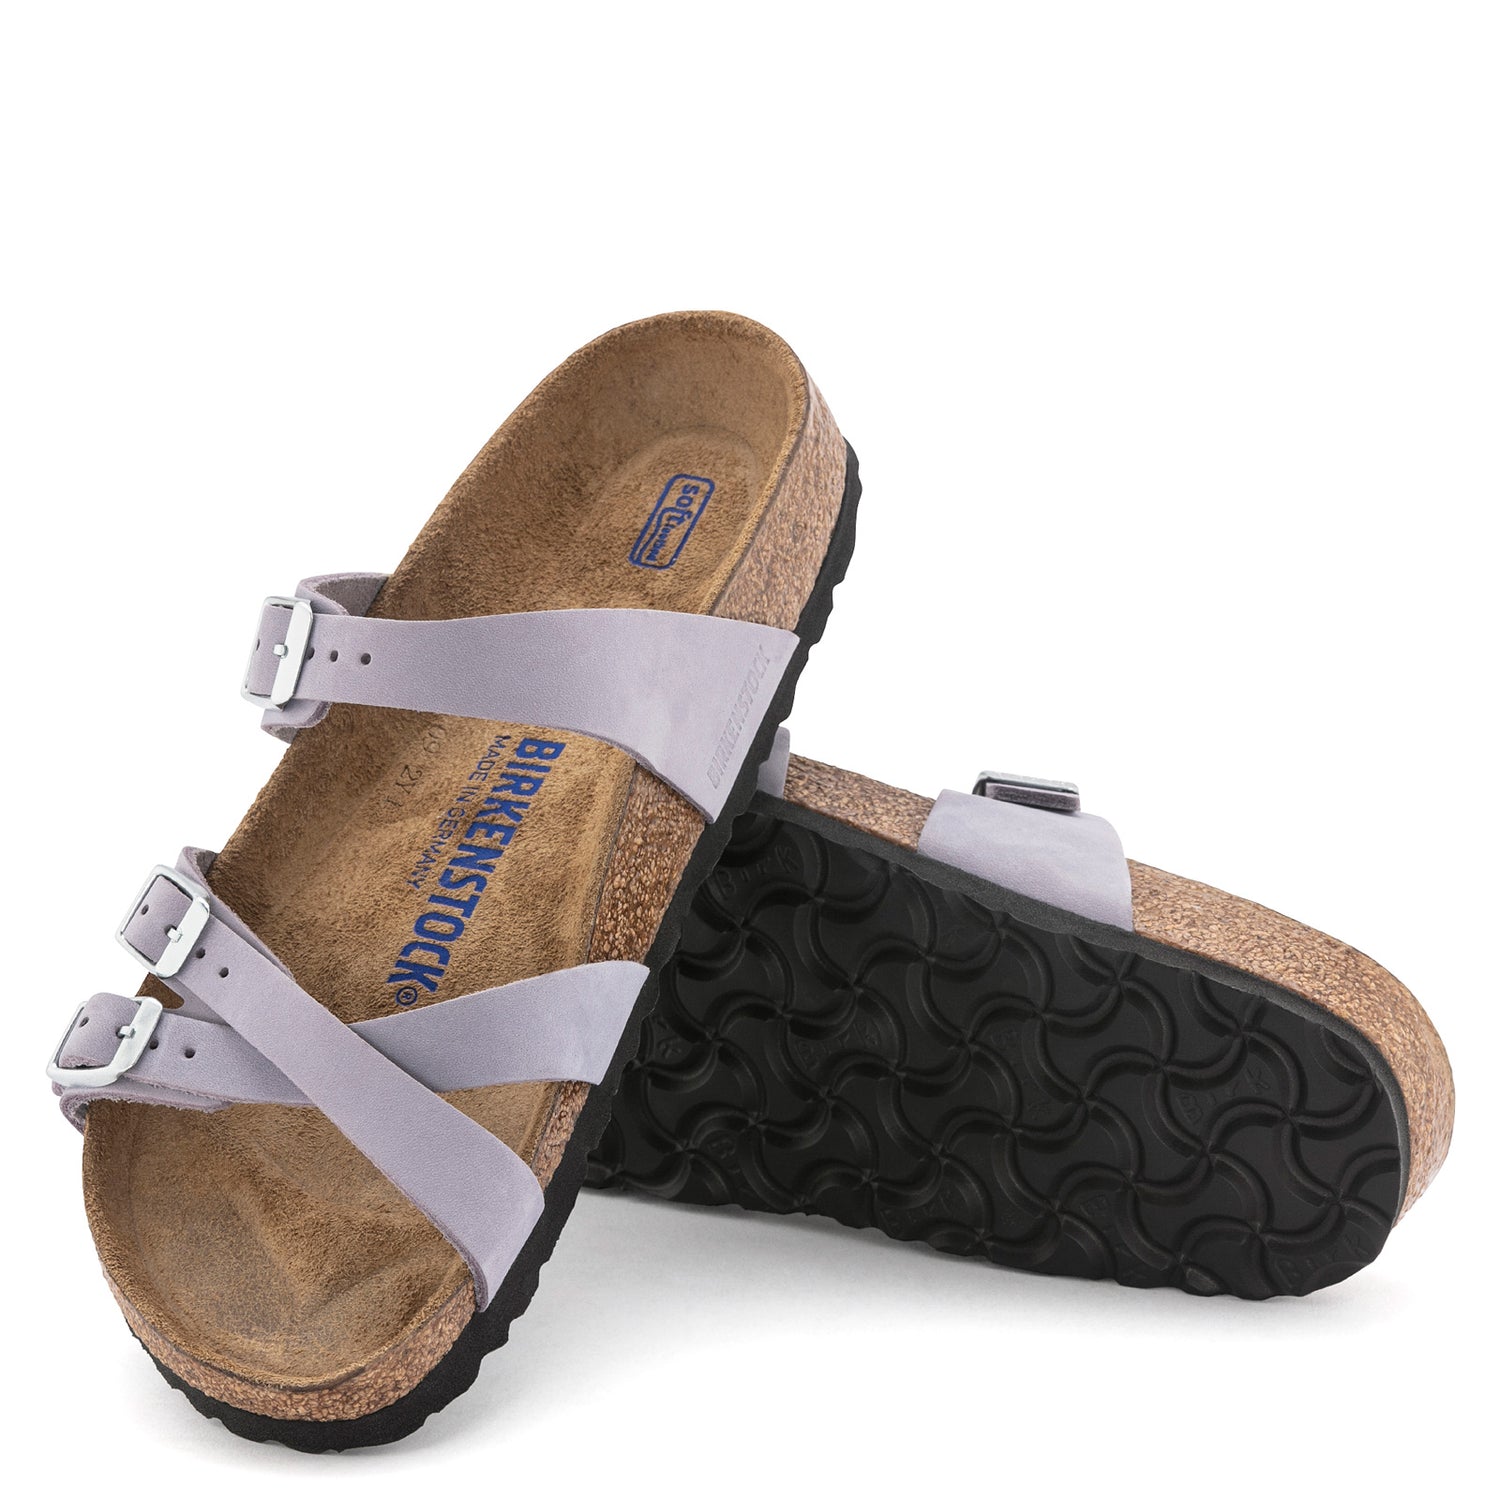 Peltz Shoes  Women's Birkenstock Franca Soft Footbed Sandal - Regular Width PURPLE 1024 209 R